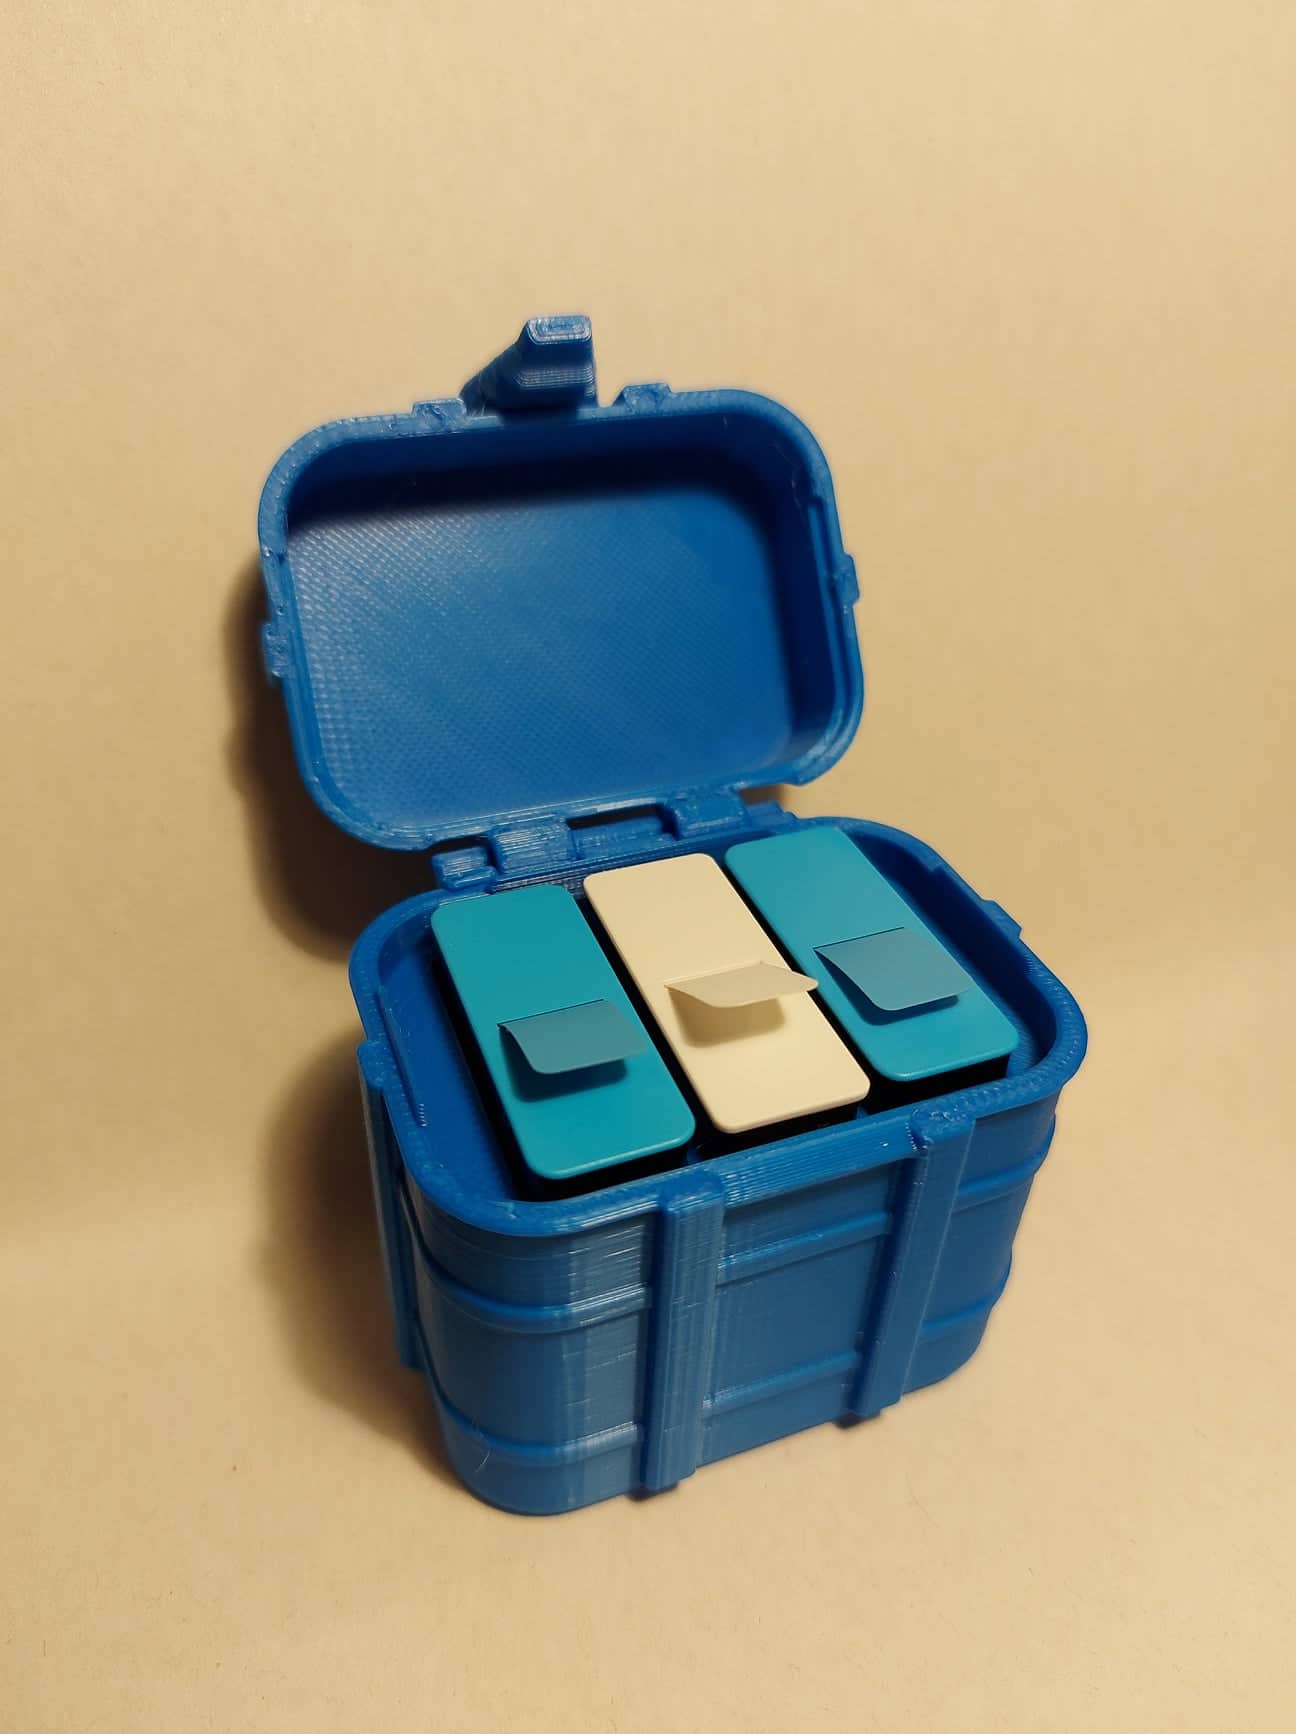 GoPro battery box